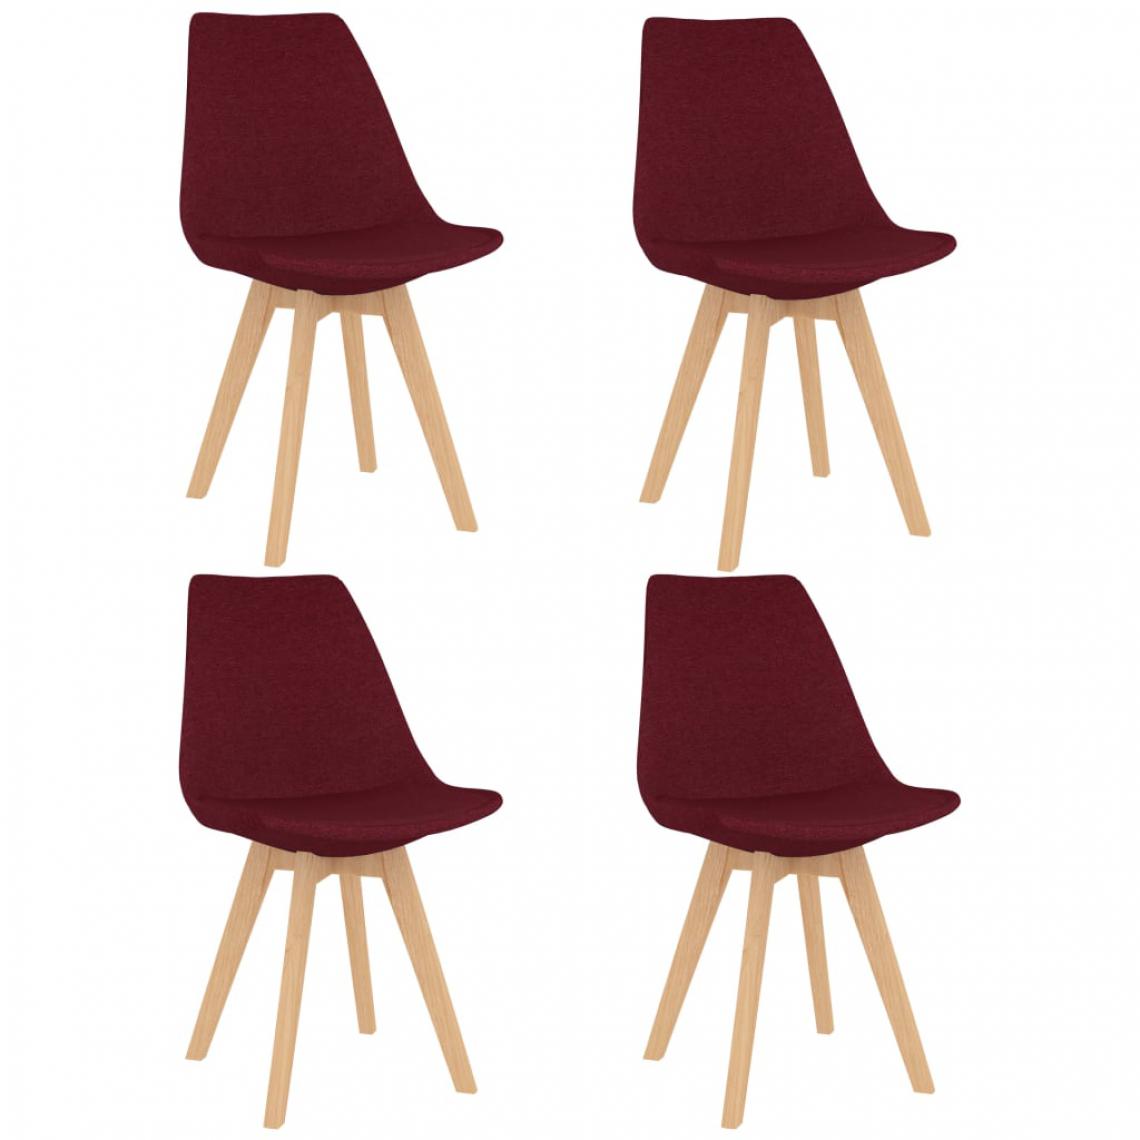 Chunhelife - Chunhelife Chaises de salle à manger 4 pcs Rouge bordeaux Tissu - Chaises